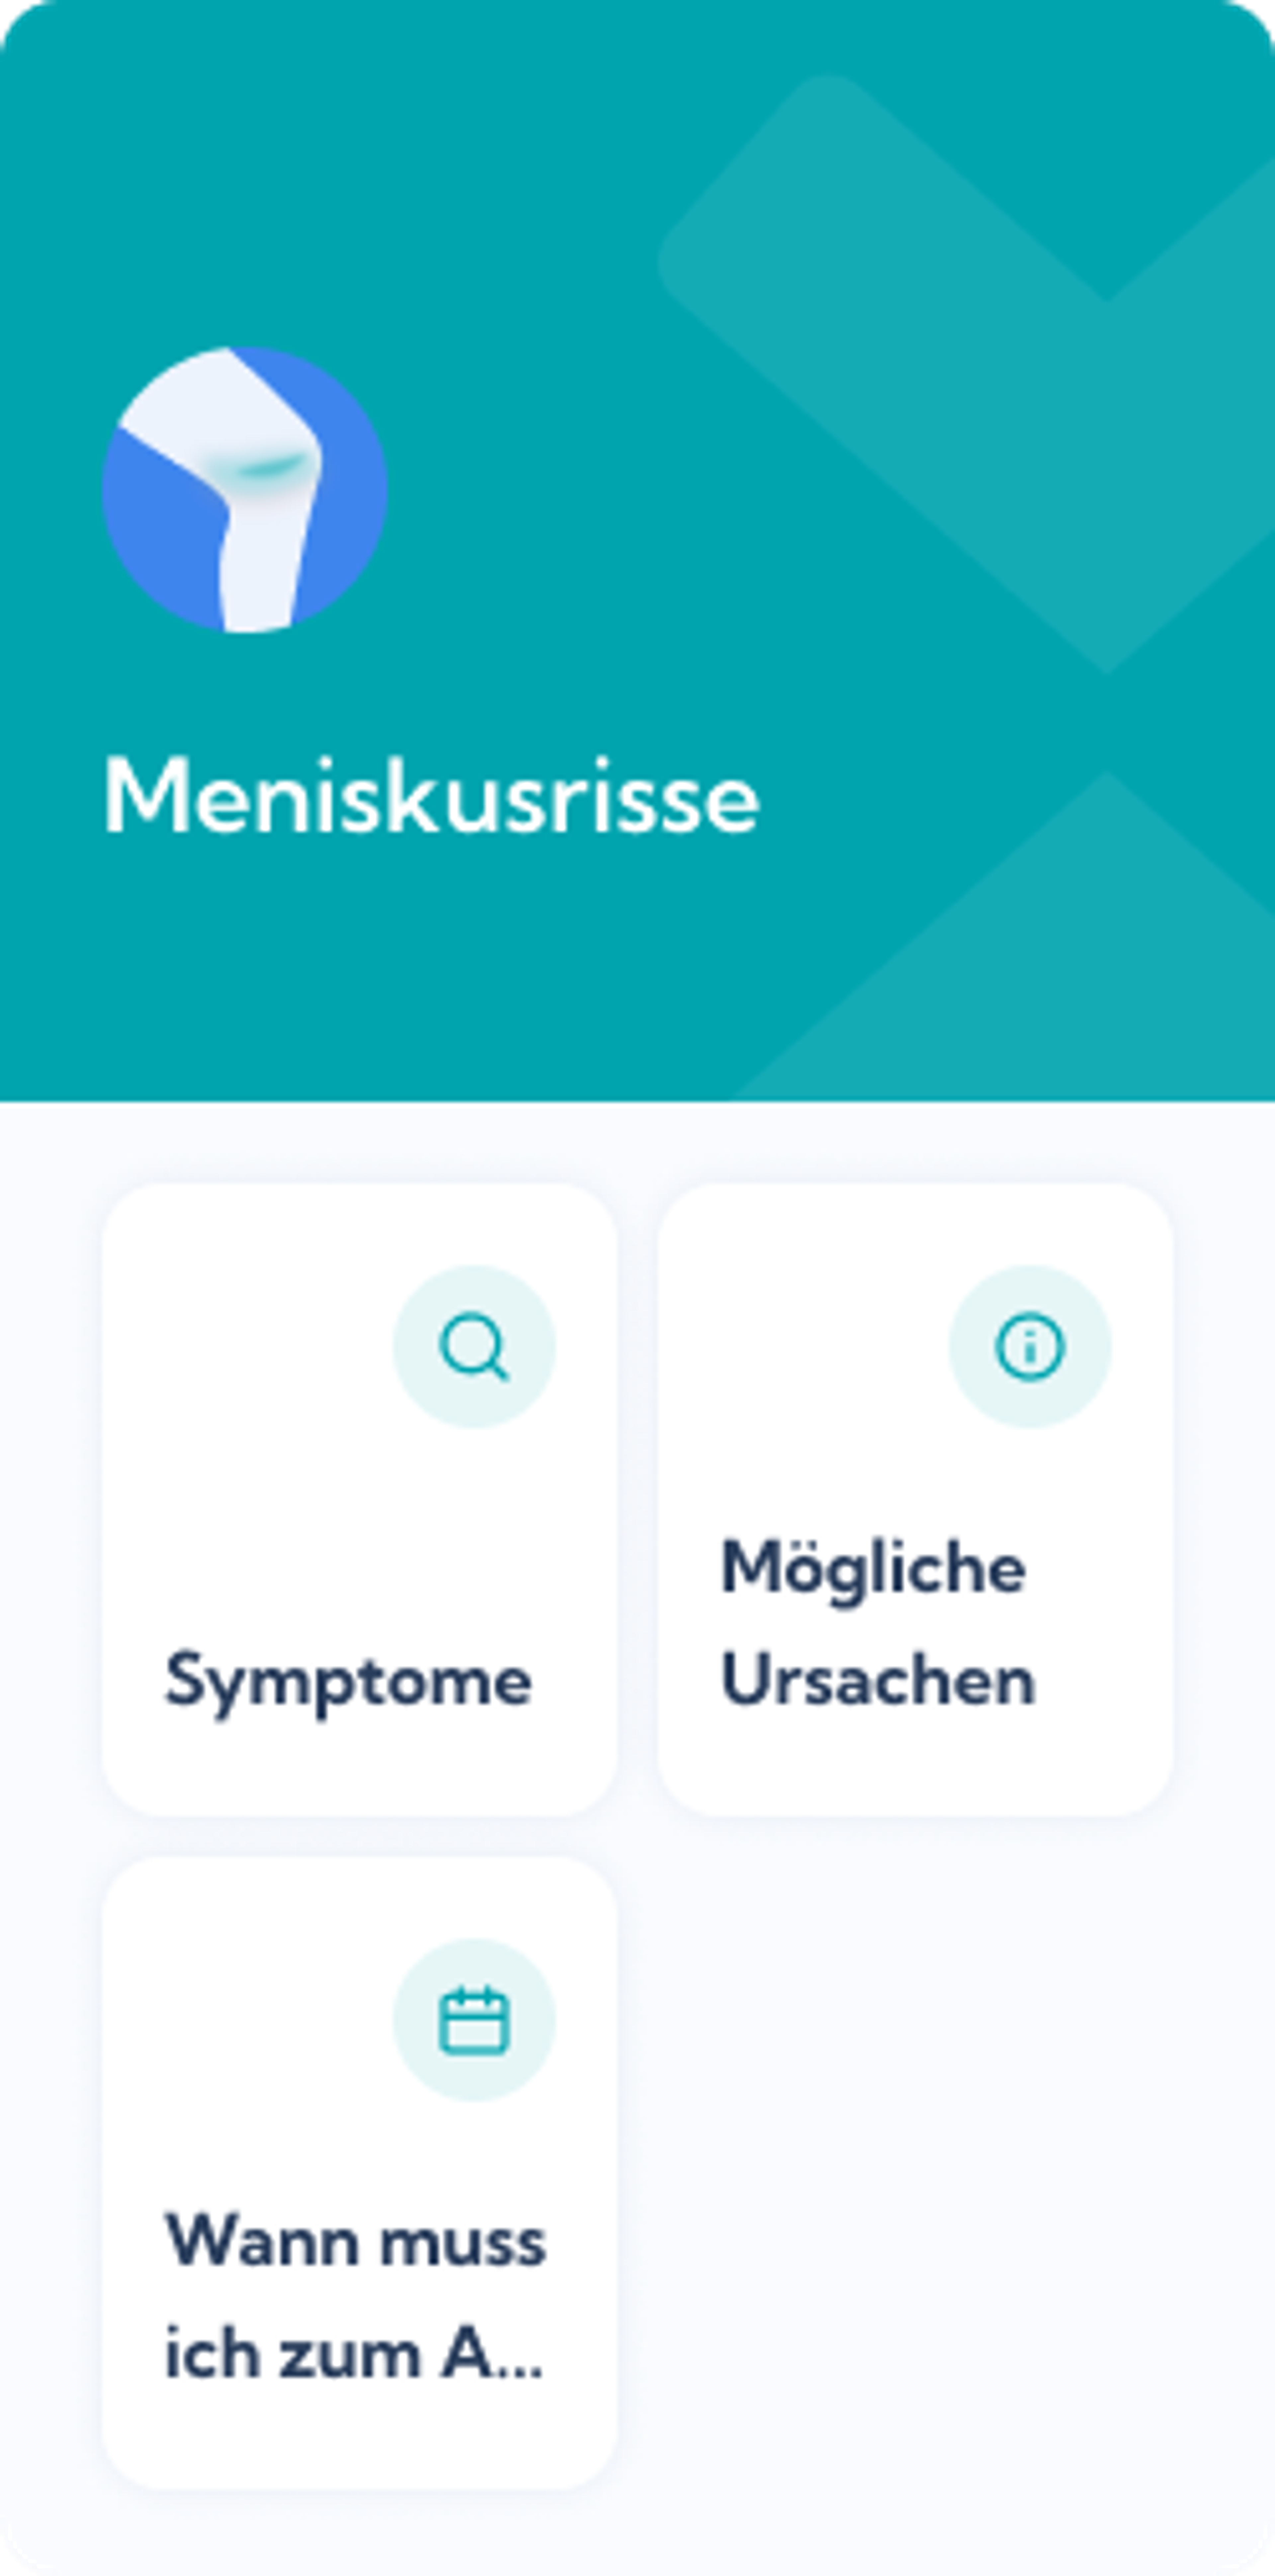 Meniskusriss Reha-Plan von Exakt Health - Dashboard overview of the Exakt Health app